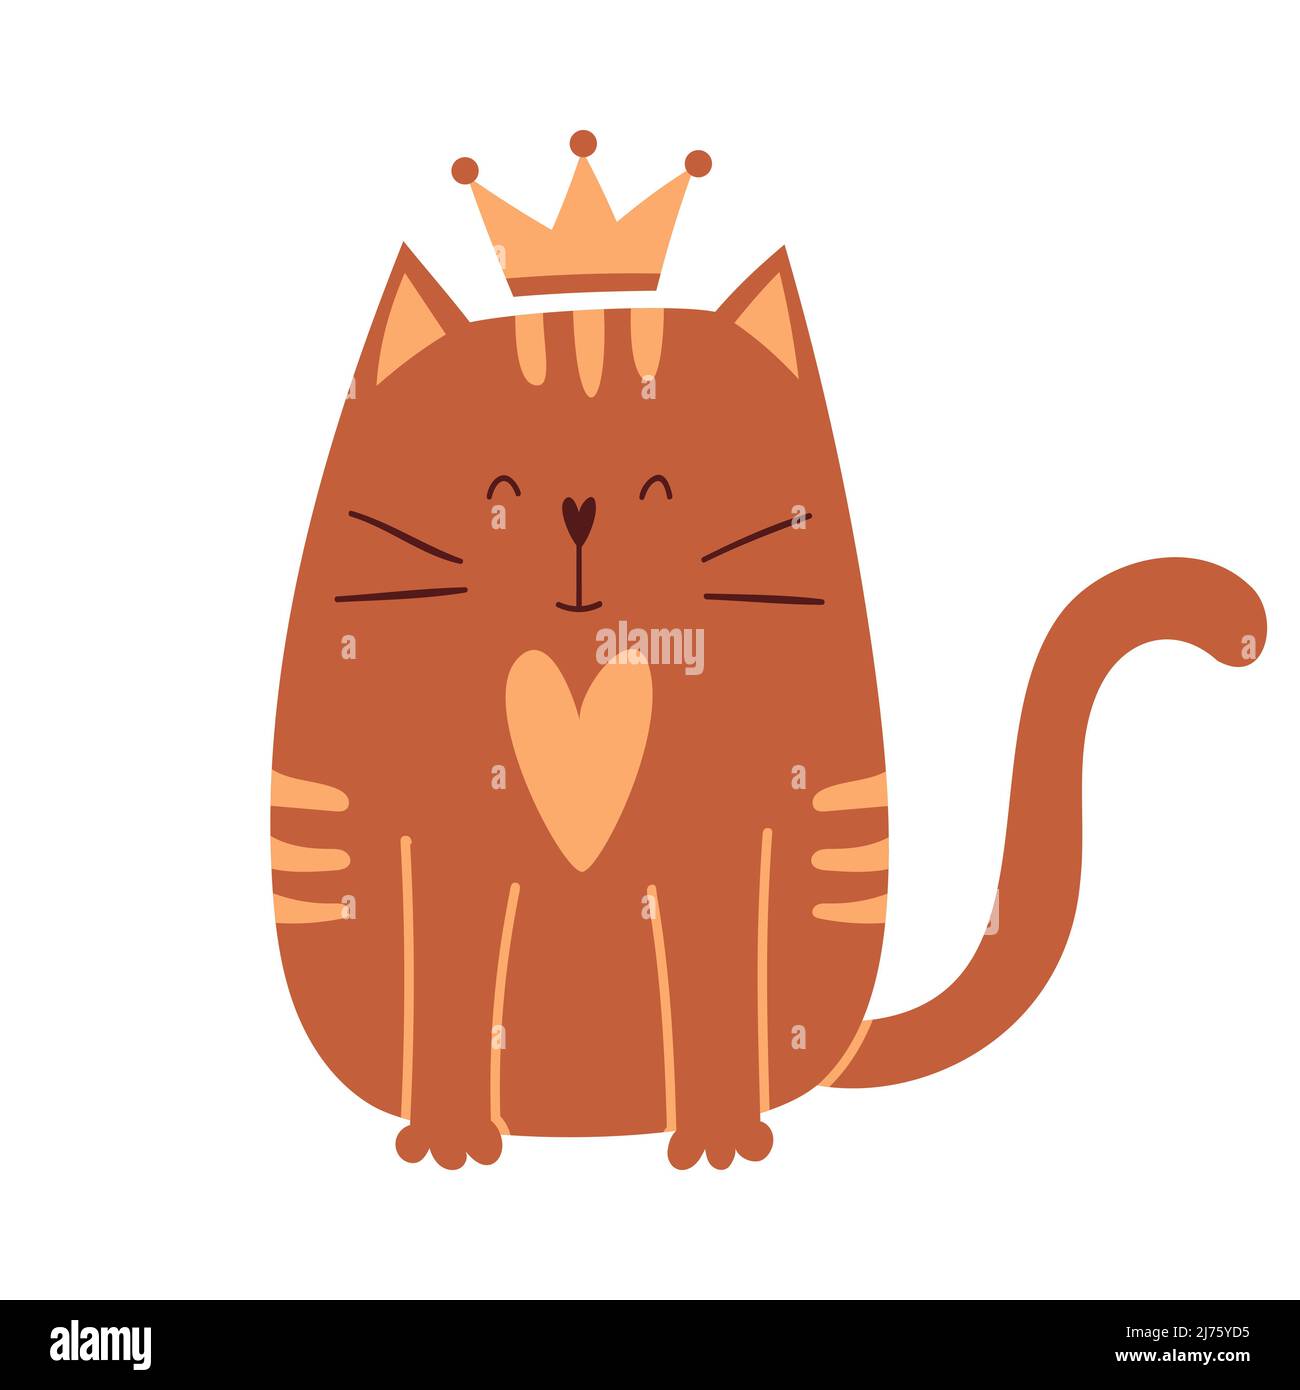 Carino gatto cartoon con una corona sulla testa si siede e sorride. Un semplice personaggio adorabile per i biglietti d'auguri di San Valentino. Illustratio vettore infantile Illustrazione Vettoriale